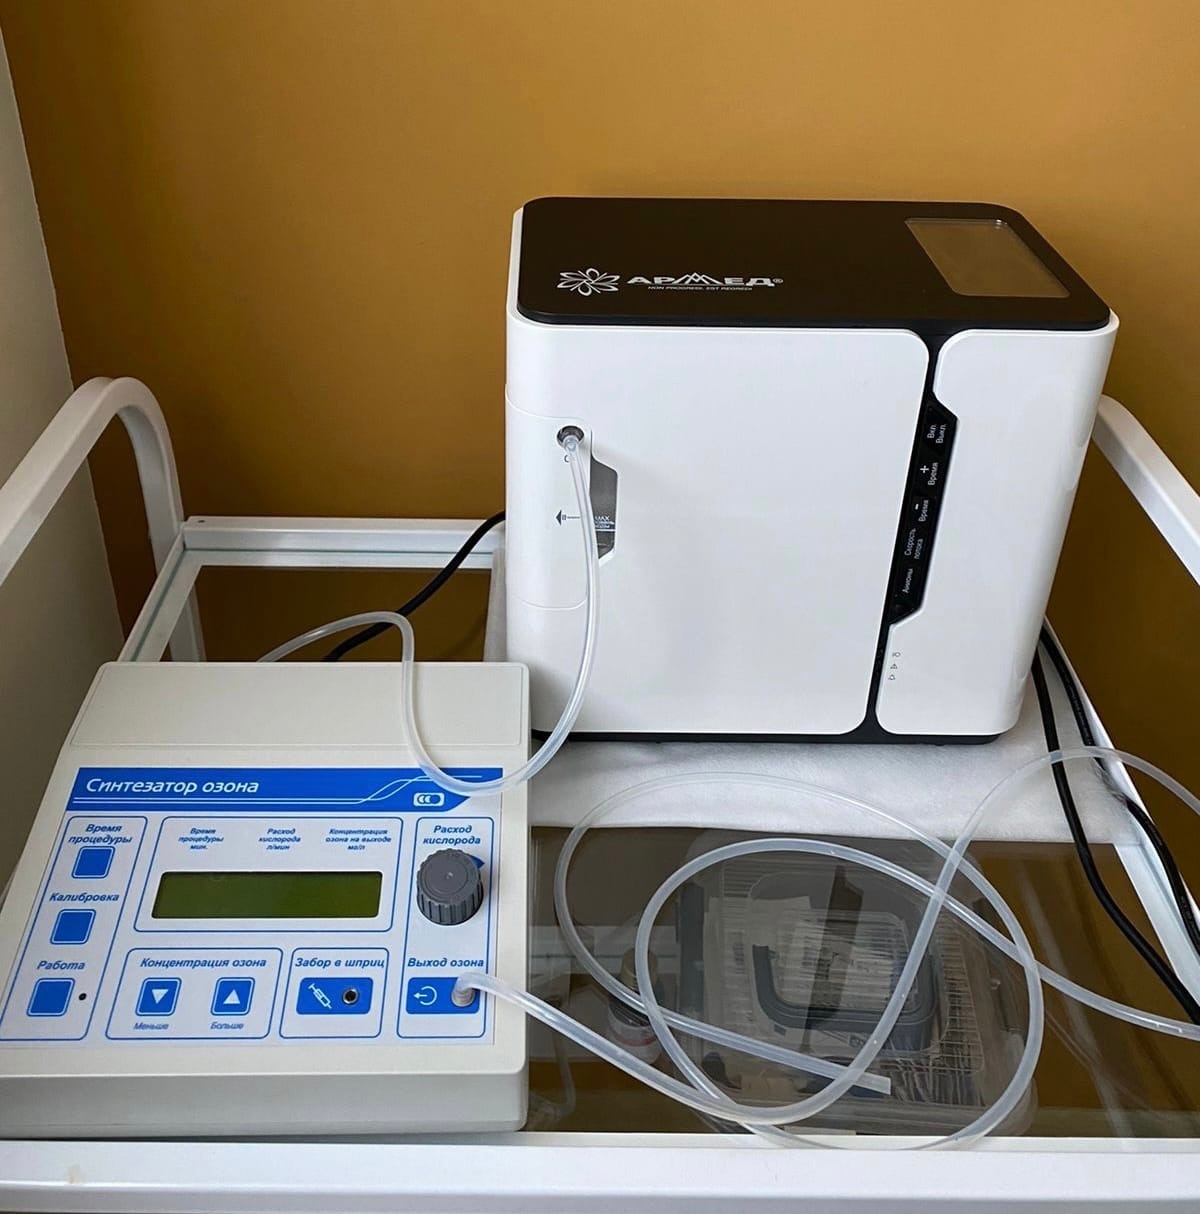 Озонотерапия стоимость. Озонотерапия аппарат. Аппарат для озонотерапии. Аппарат для озонотерапии лица. Озонотерапия кабинет.